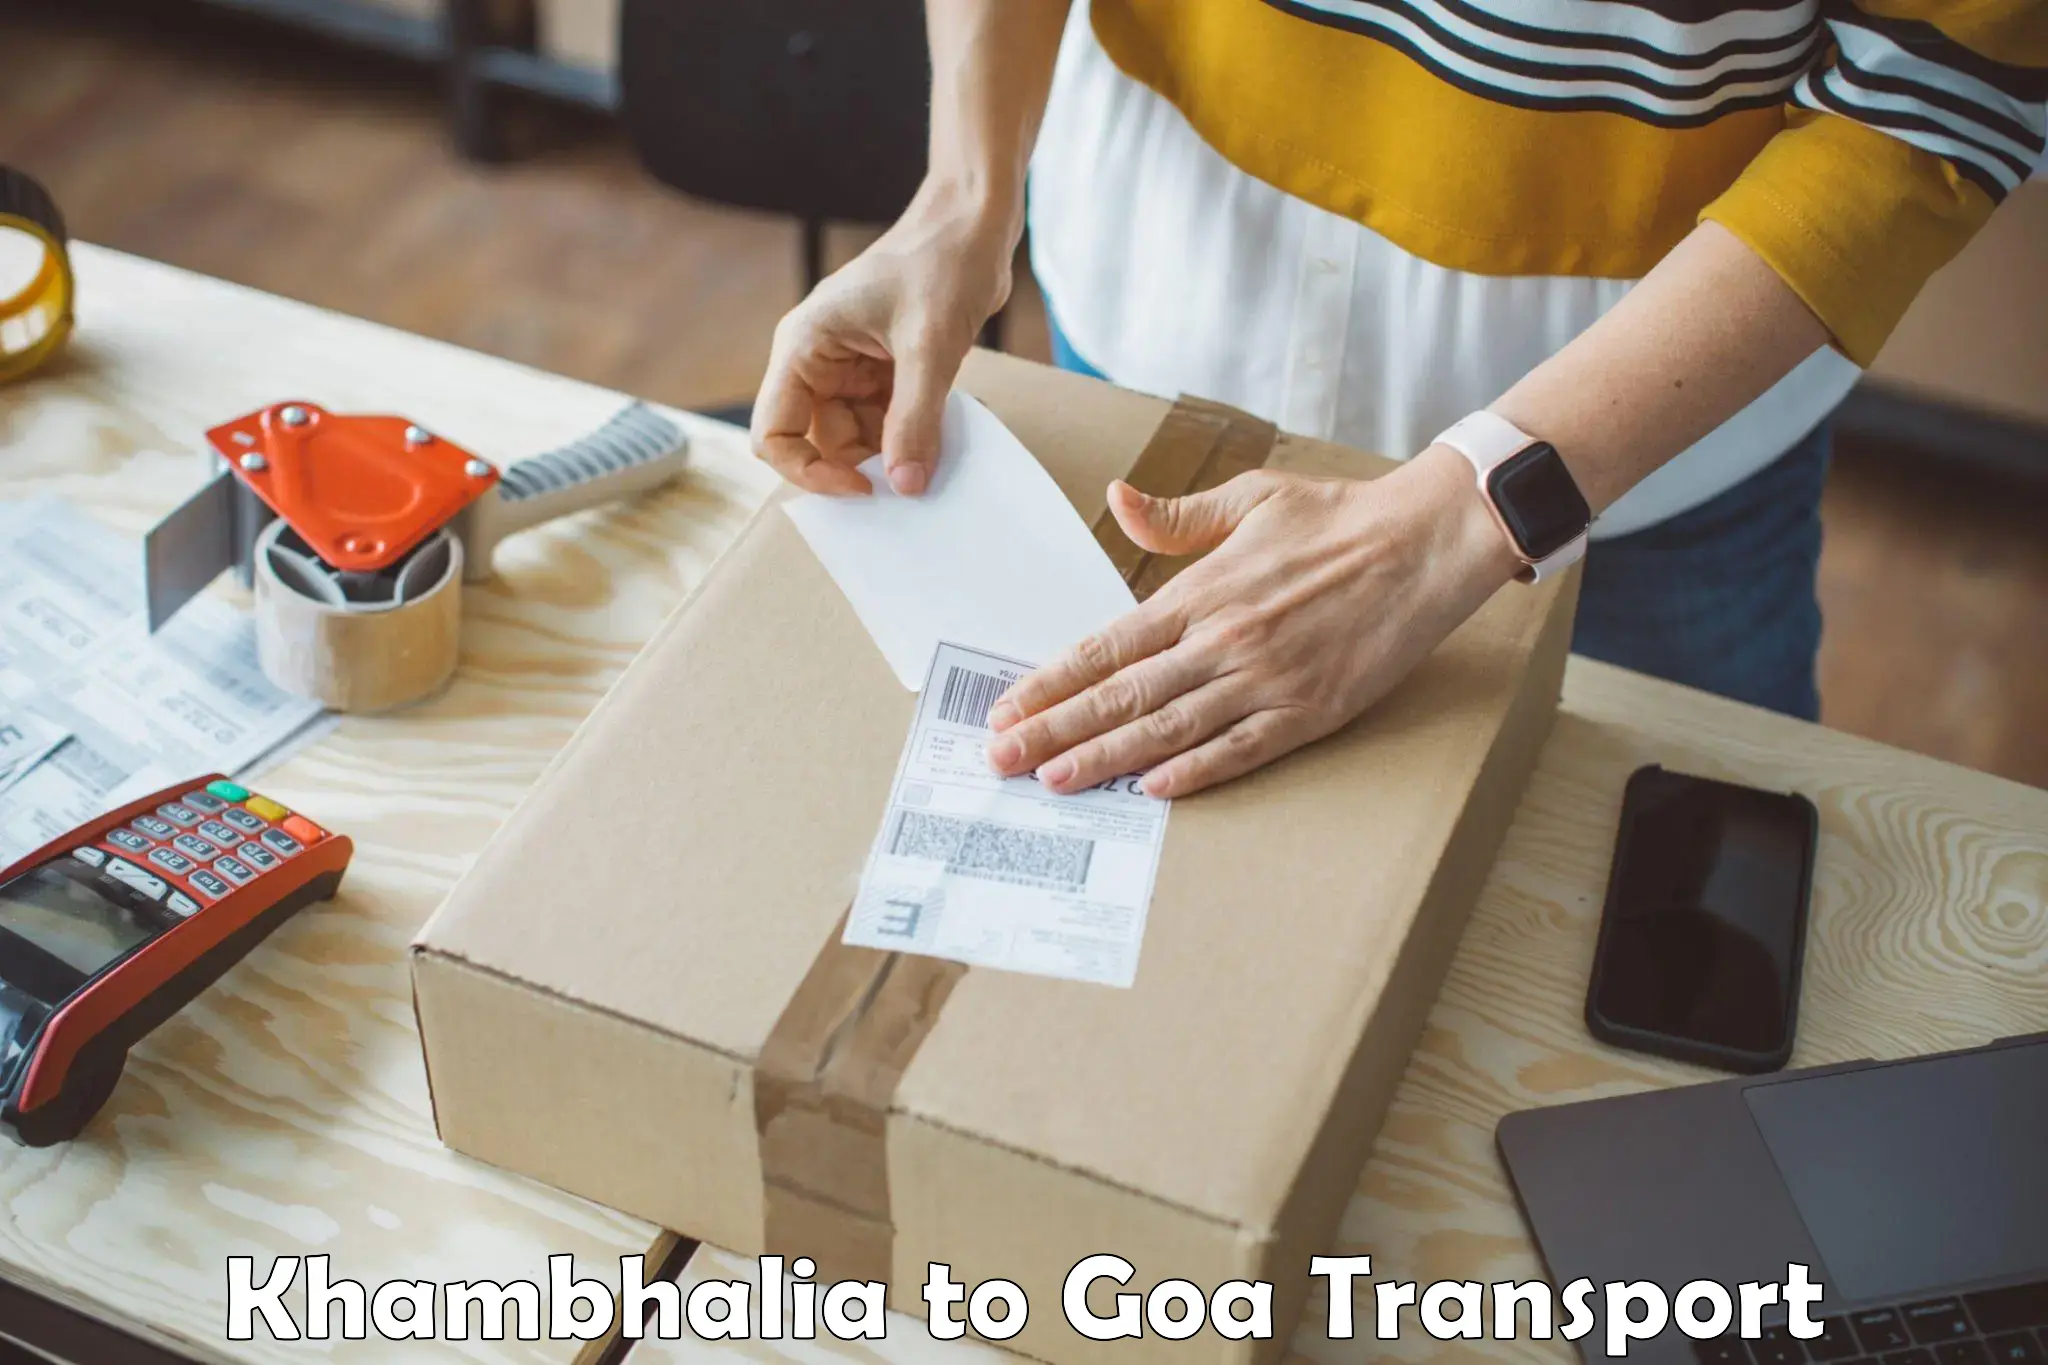 Nearby transport service Khambhalia to IIT Goa